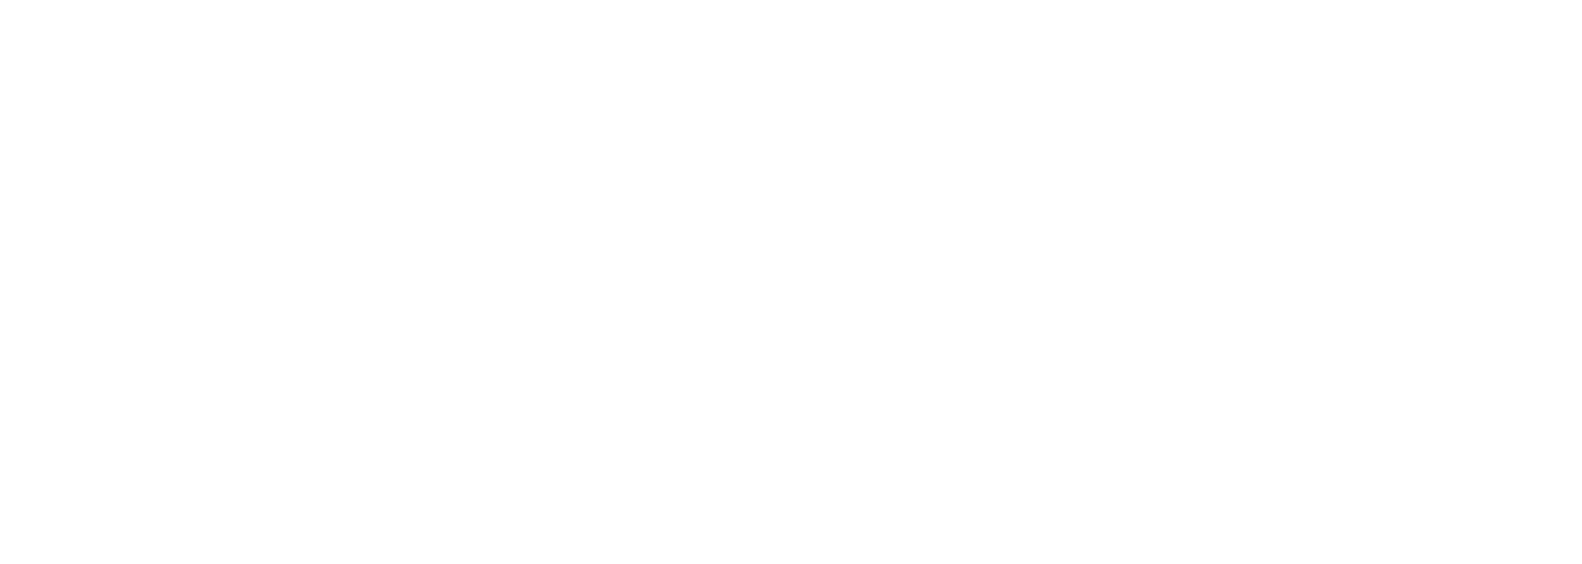 Filmproduktion Bern - BOFF. - Logo Schweizerisches Rotes Kreuz